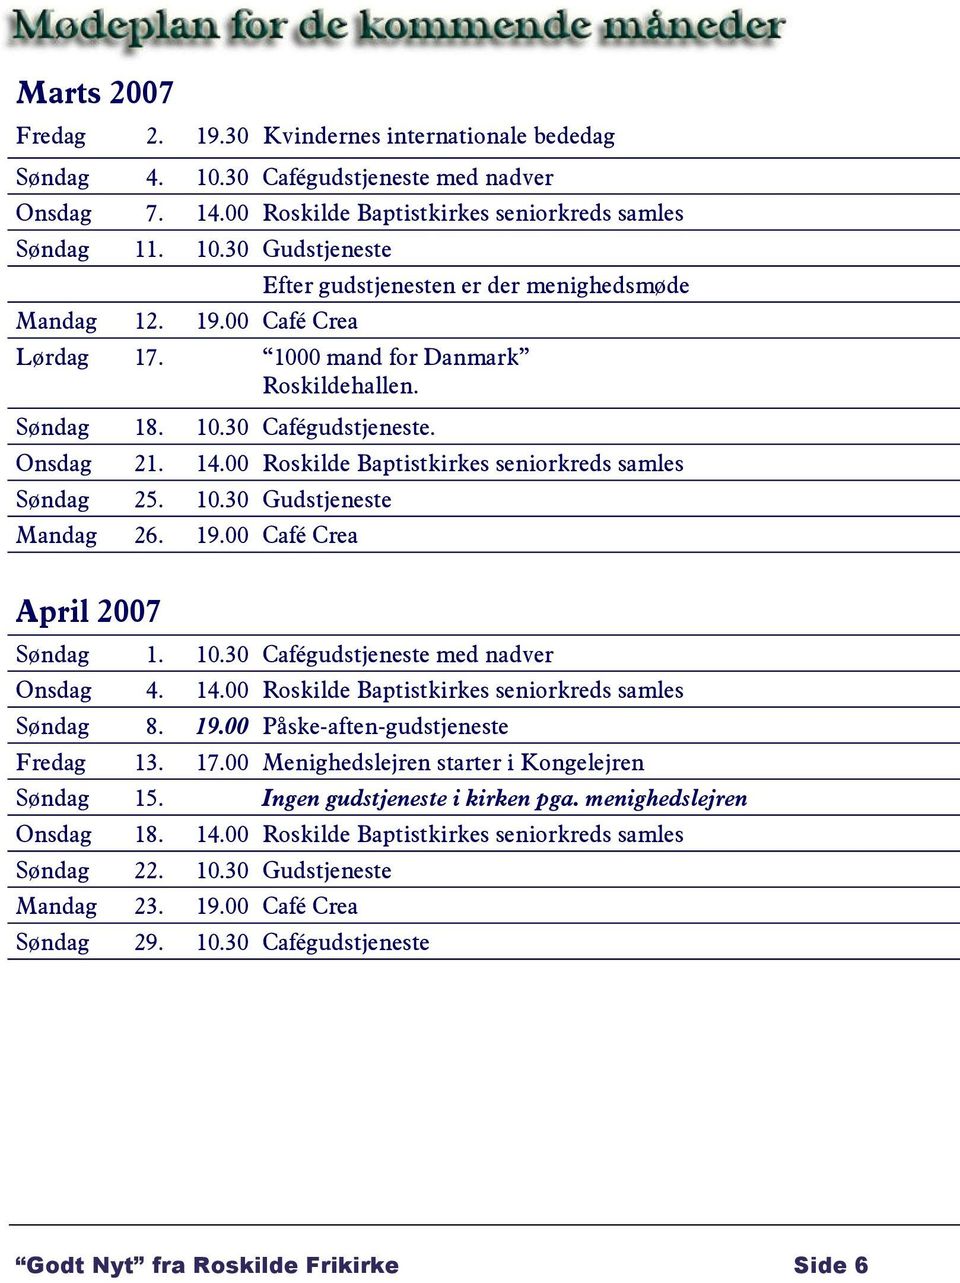 00 Roskilde Baptistkirkes seniorkreds samles Søndag 25. 10.30 Gudstjeneste Mandag 26. 19.00 Café Crea April 2007 Søndag 1. 10.30 Cafégudstjeneste med nadver Onsdag 4. 14.